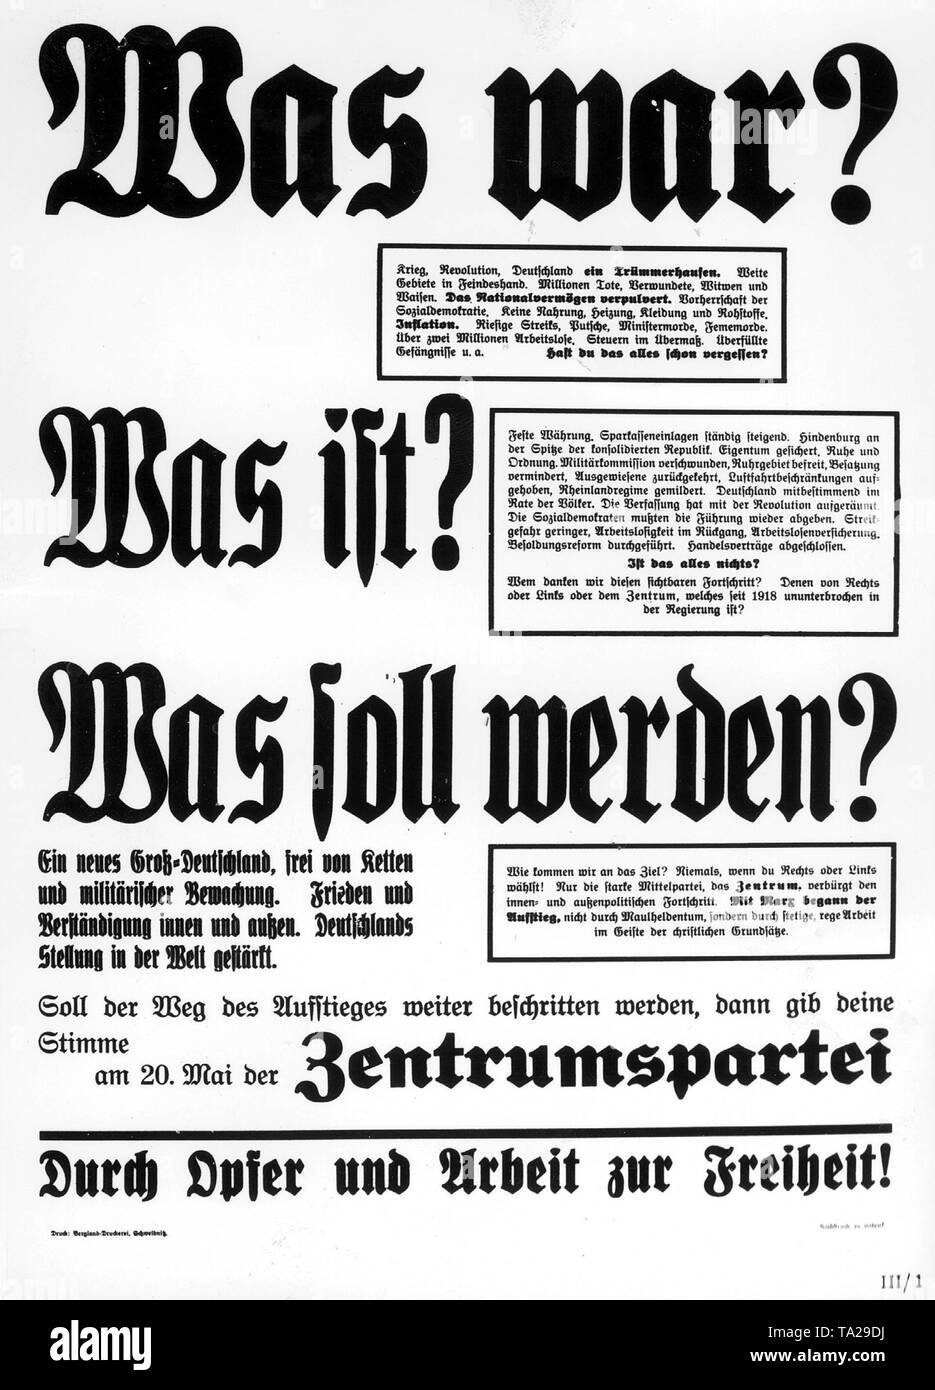 Wahlplakat des Zentrums für den Reichstag Wahl von 1928: "Was war in der Vergangenheit? Was ist jetzt? Was ist für die Zukunft zu sein? Durch Opfer und Arbeiten zur Freiheit!". Stockfoto